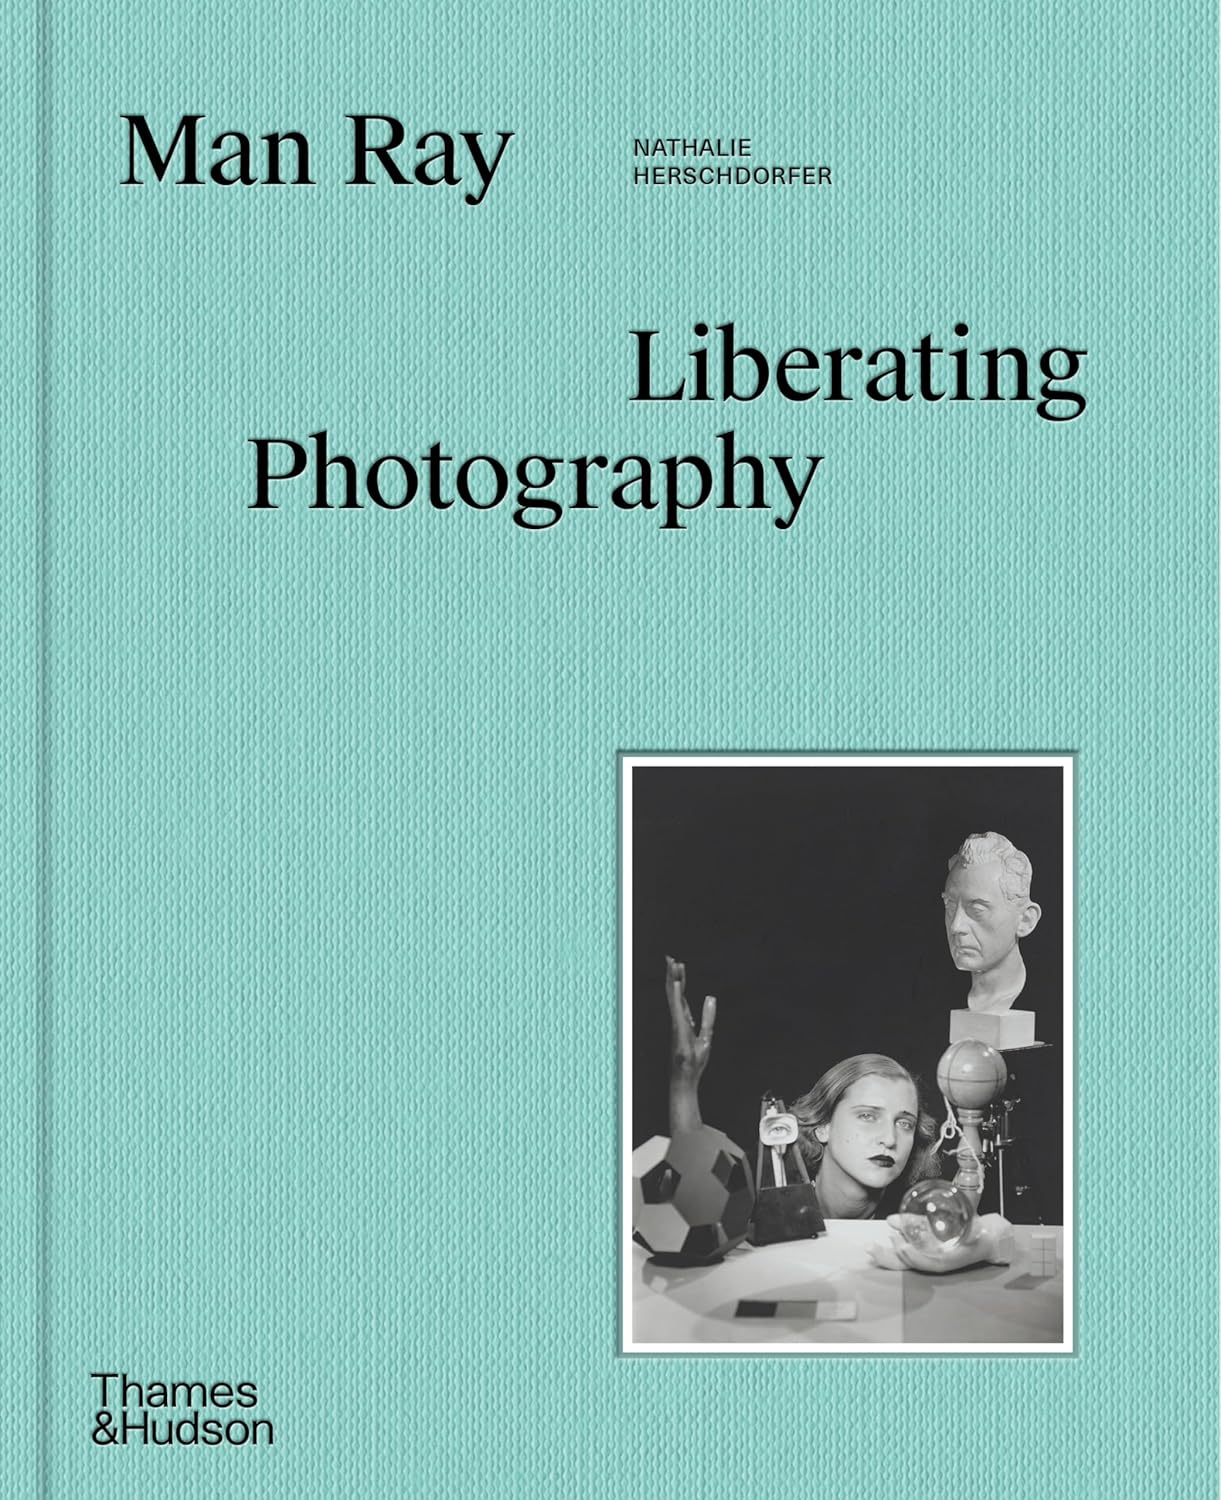 Man Ray - Liberating Photography